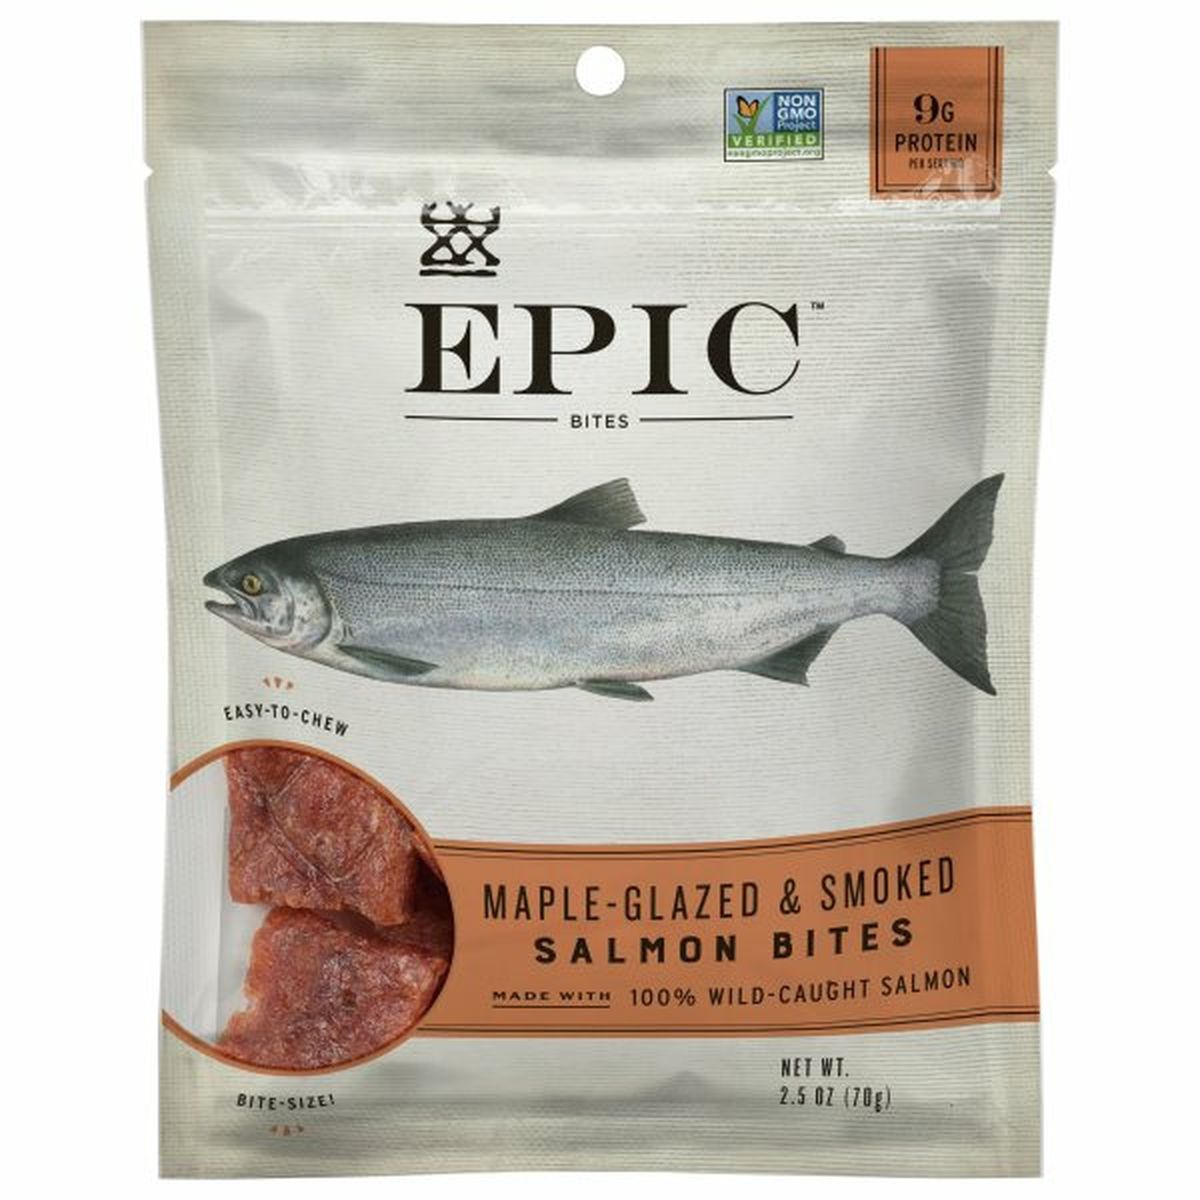 Calories in Epic Salmon Bites, Maple-Glazed & Smoked